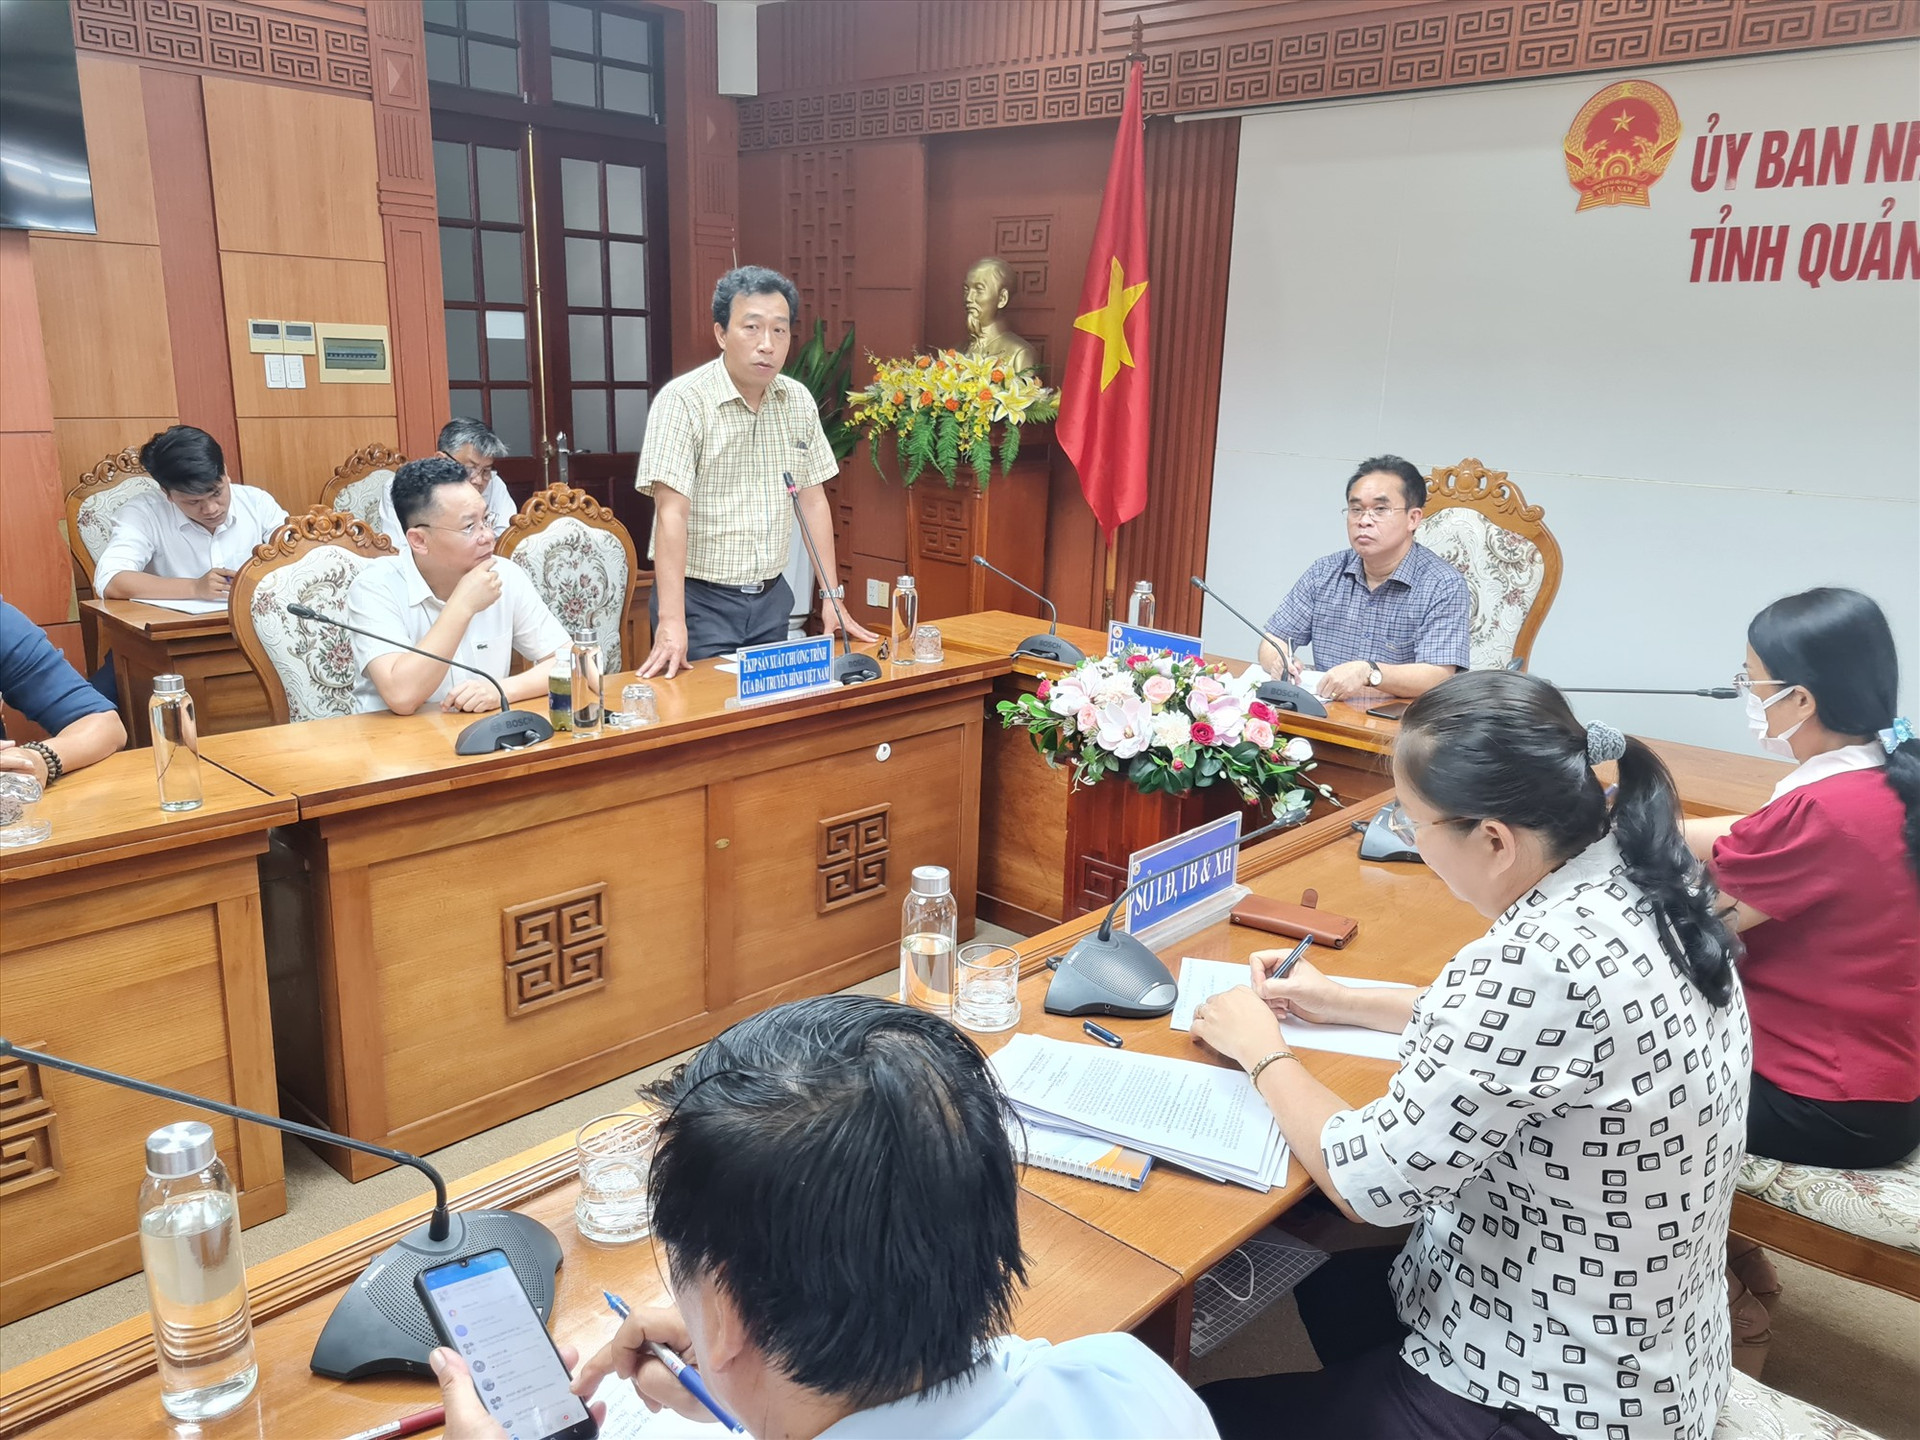 Đại diện Đài Truyền hình Việt Nam trình bày một số nội dung tại cuộc họp. Ảnh: D.L